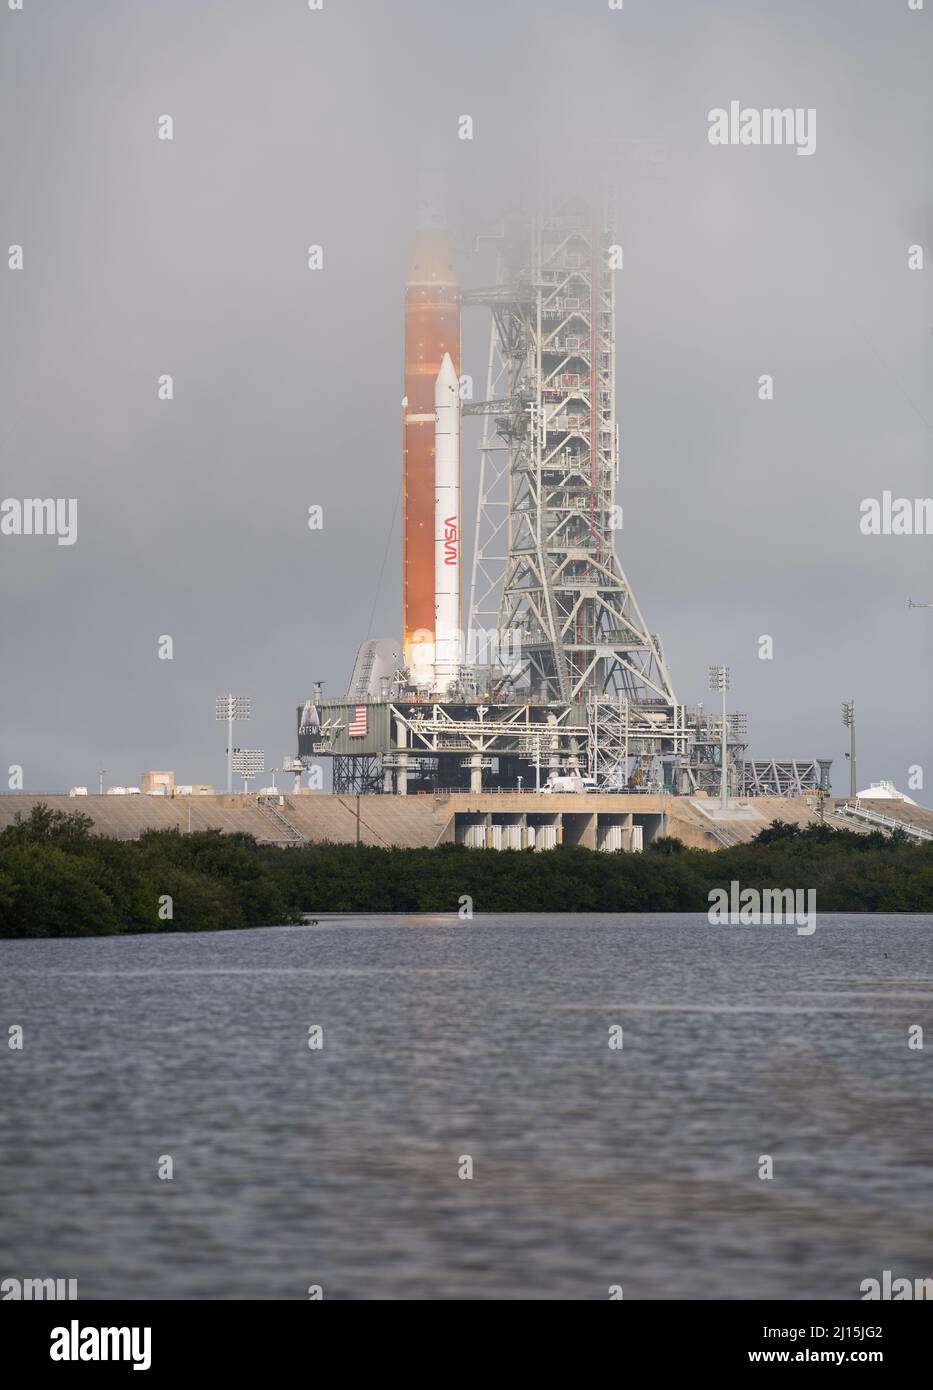 Il razzo Space Launch System (SLS) della NASA con la navicella spaziale Orion a bordo è visto in cima a un lanciatore mobile al Launch Complex 39B, venerdì 18 marzo 2022, dopo essere stato lanciato sul trampolino di lancio per la prima volta al Kennedy Space Center della NASA in Florida. Prima del test di volo Artemis i della NASA, il razzo SLS completamente accatastato e integrato e la navicella spaziale Orion saranno sottoposti a una prova di vestito bagnato al Launch Complex 39B per verificare i sistemi e mettere in pratica le procedure di conto alla rovescia per il primo lancio. Photo Credit: (NASA/Aubrey Gemignani) Foto Stock